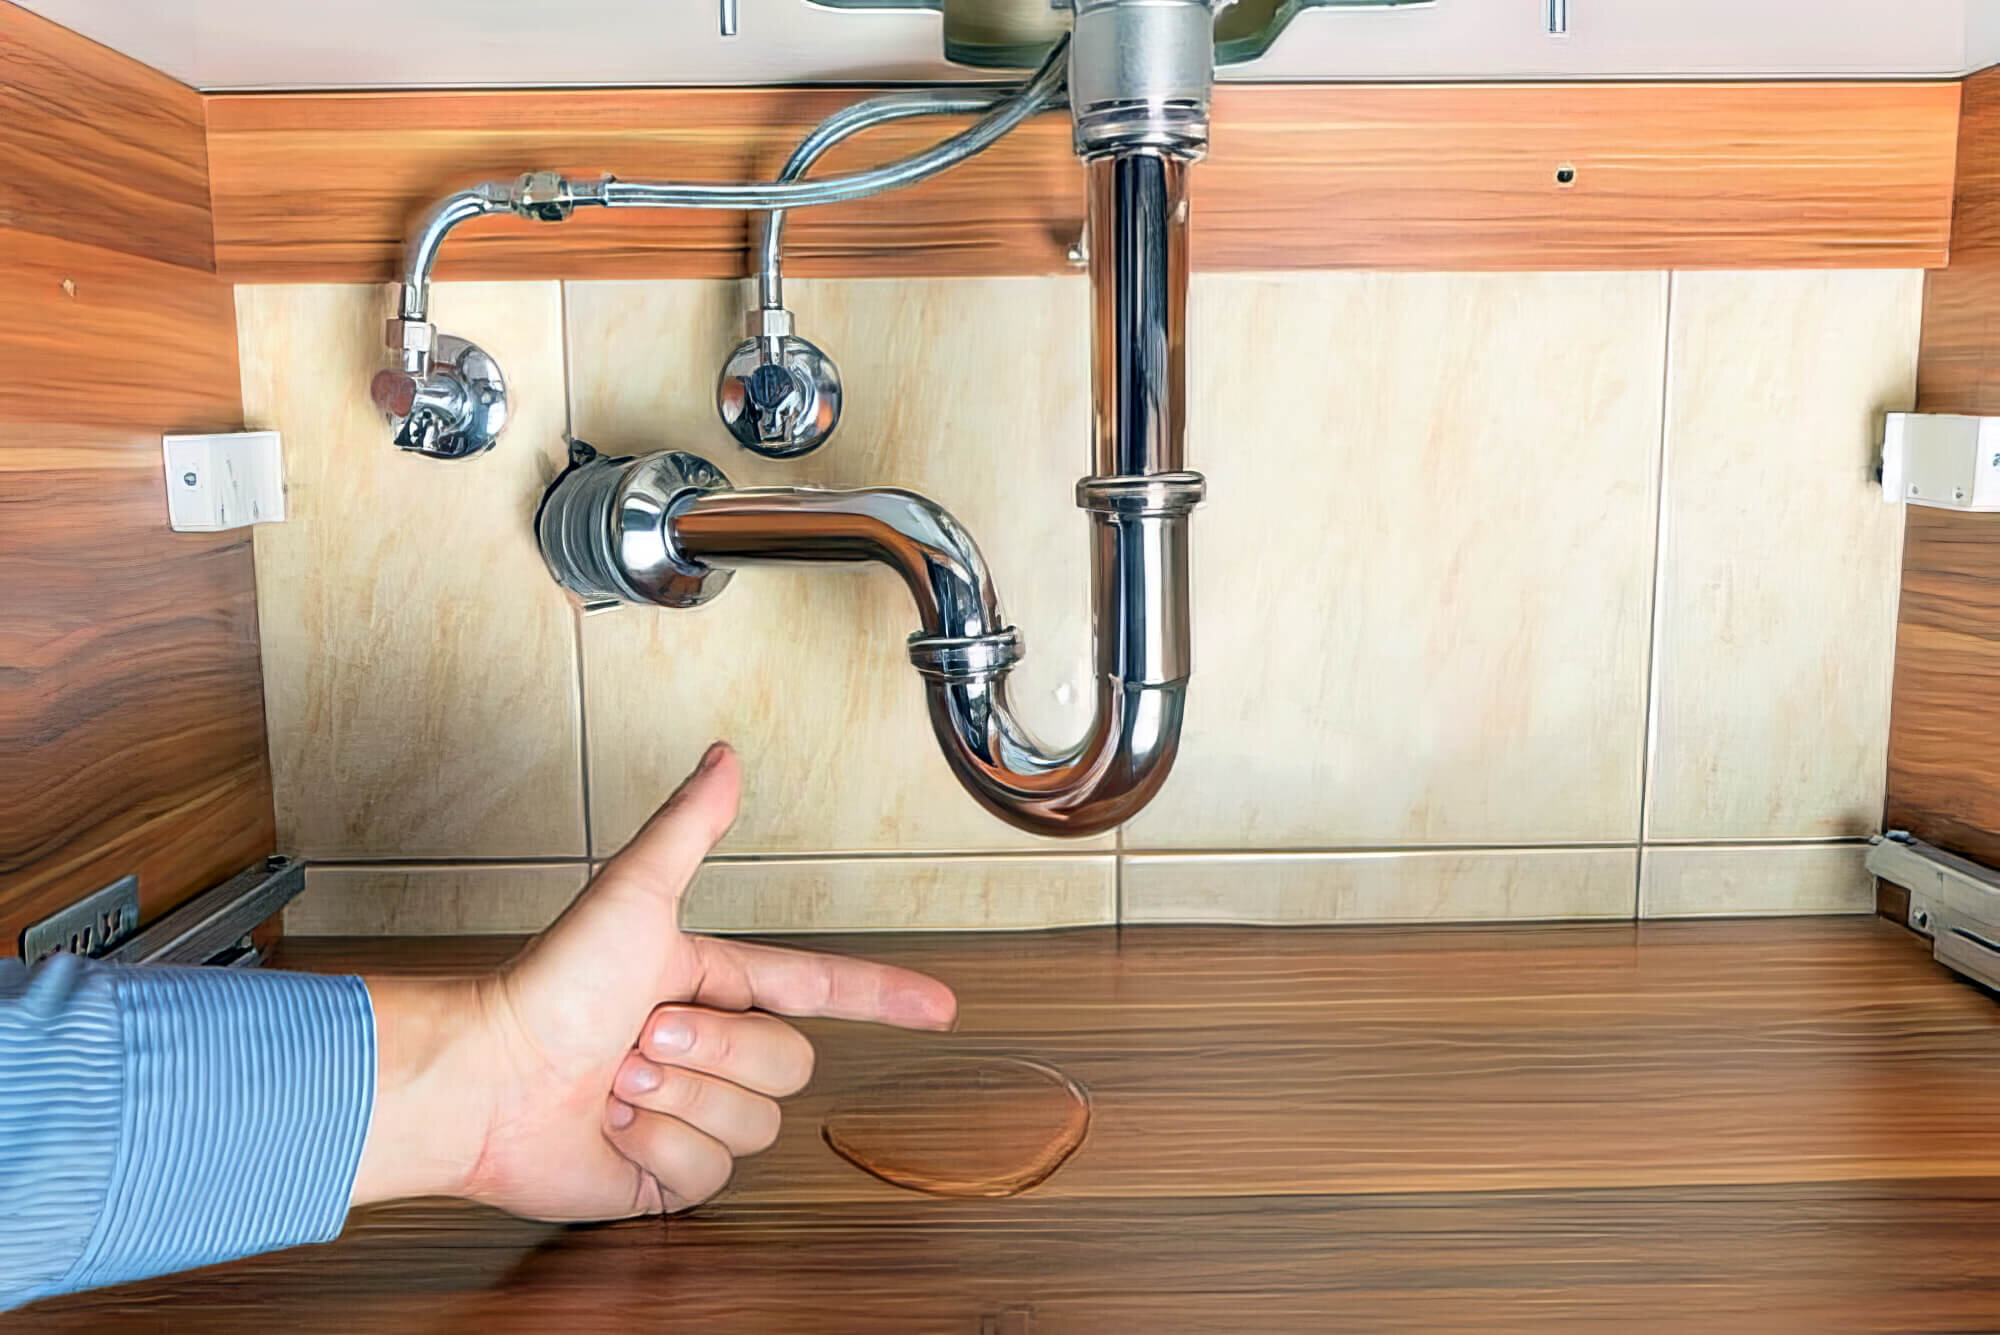 fix water hammer kitchen sink